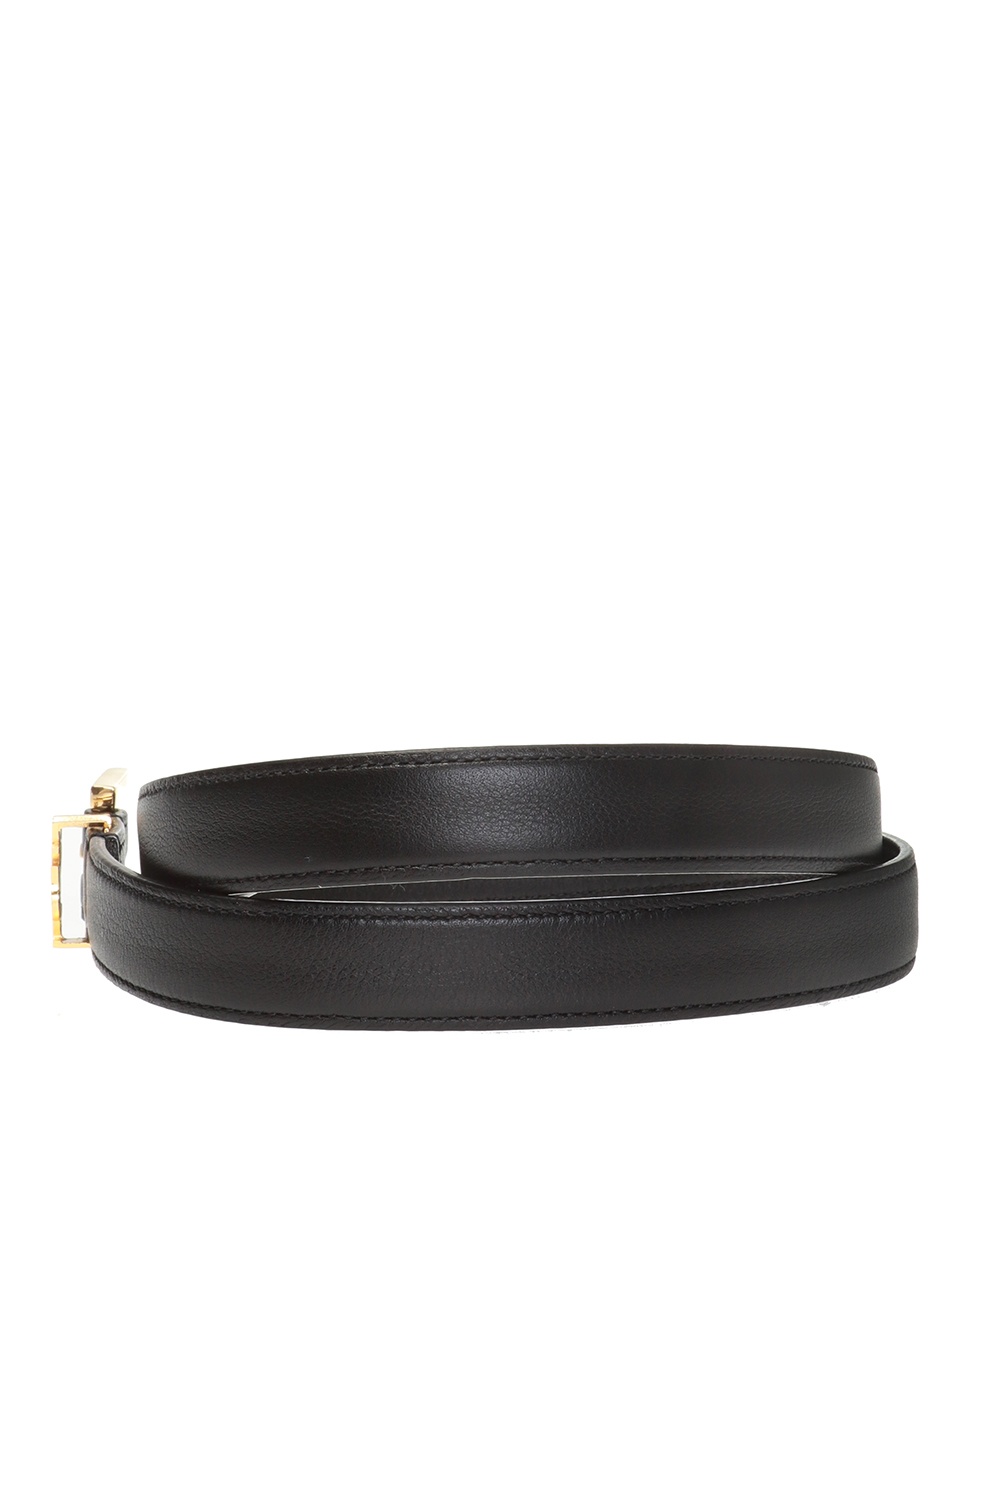 Saint Laurent - Black Python Vernis Washed Leather Belt